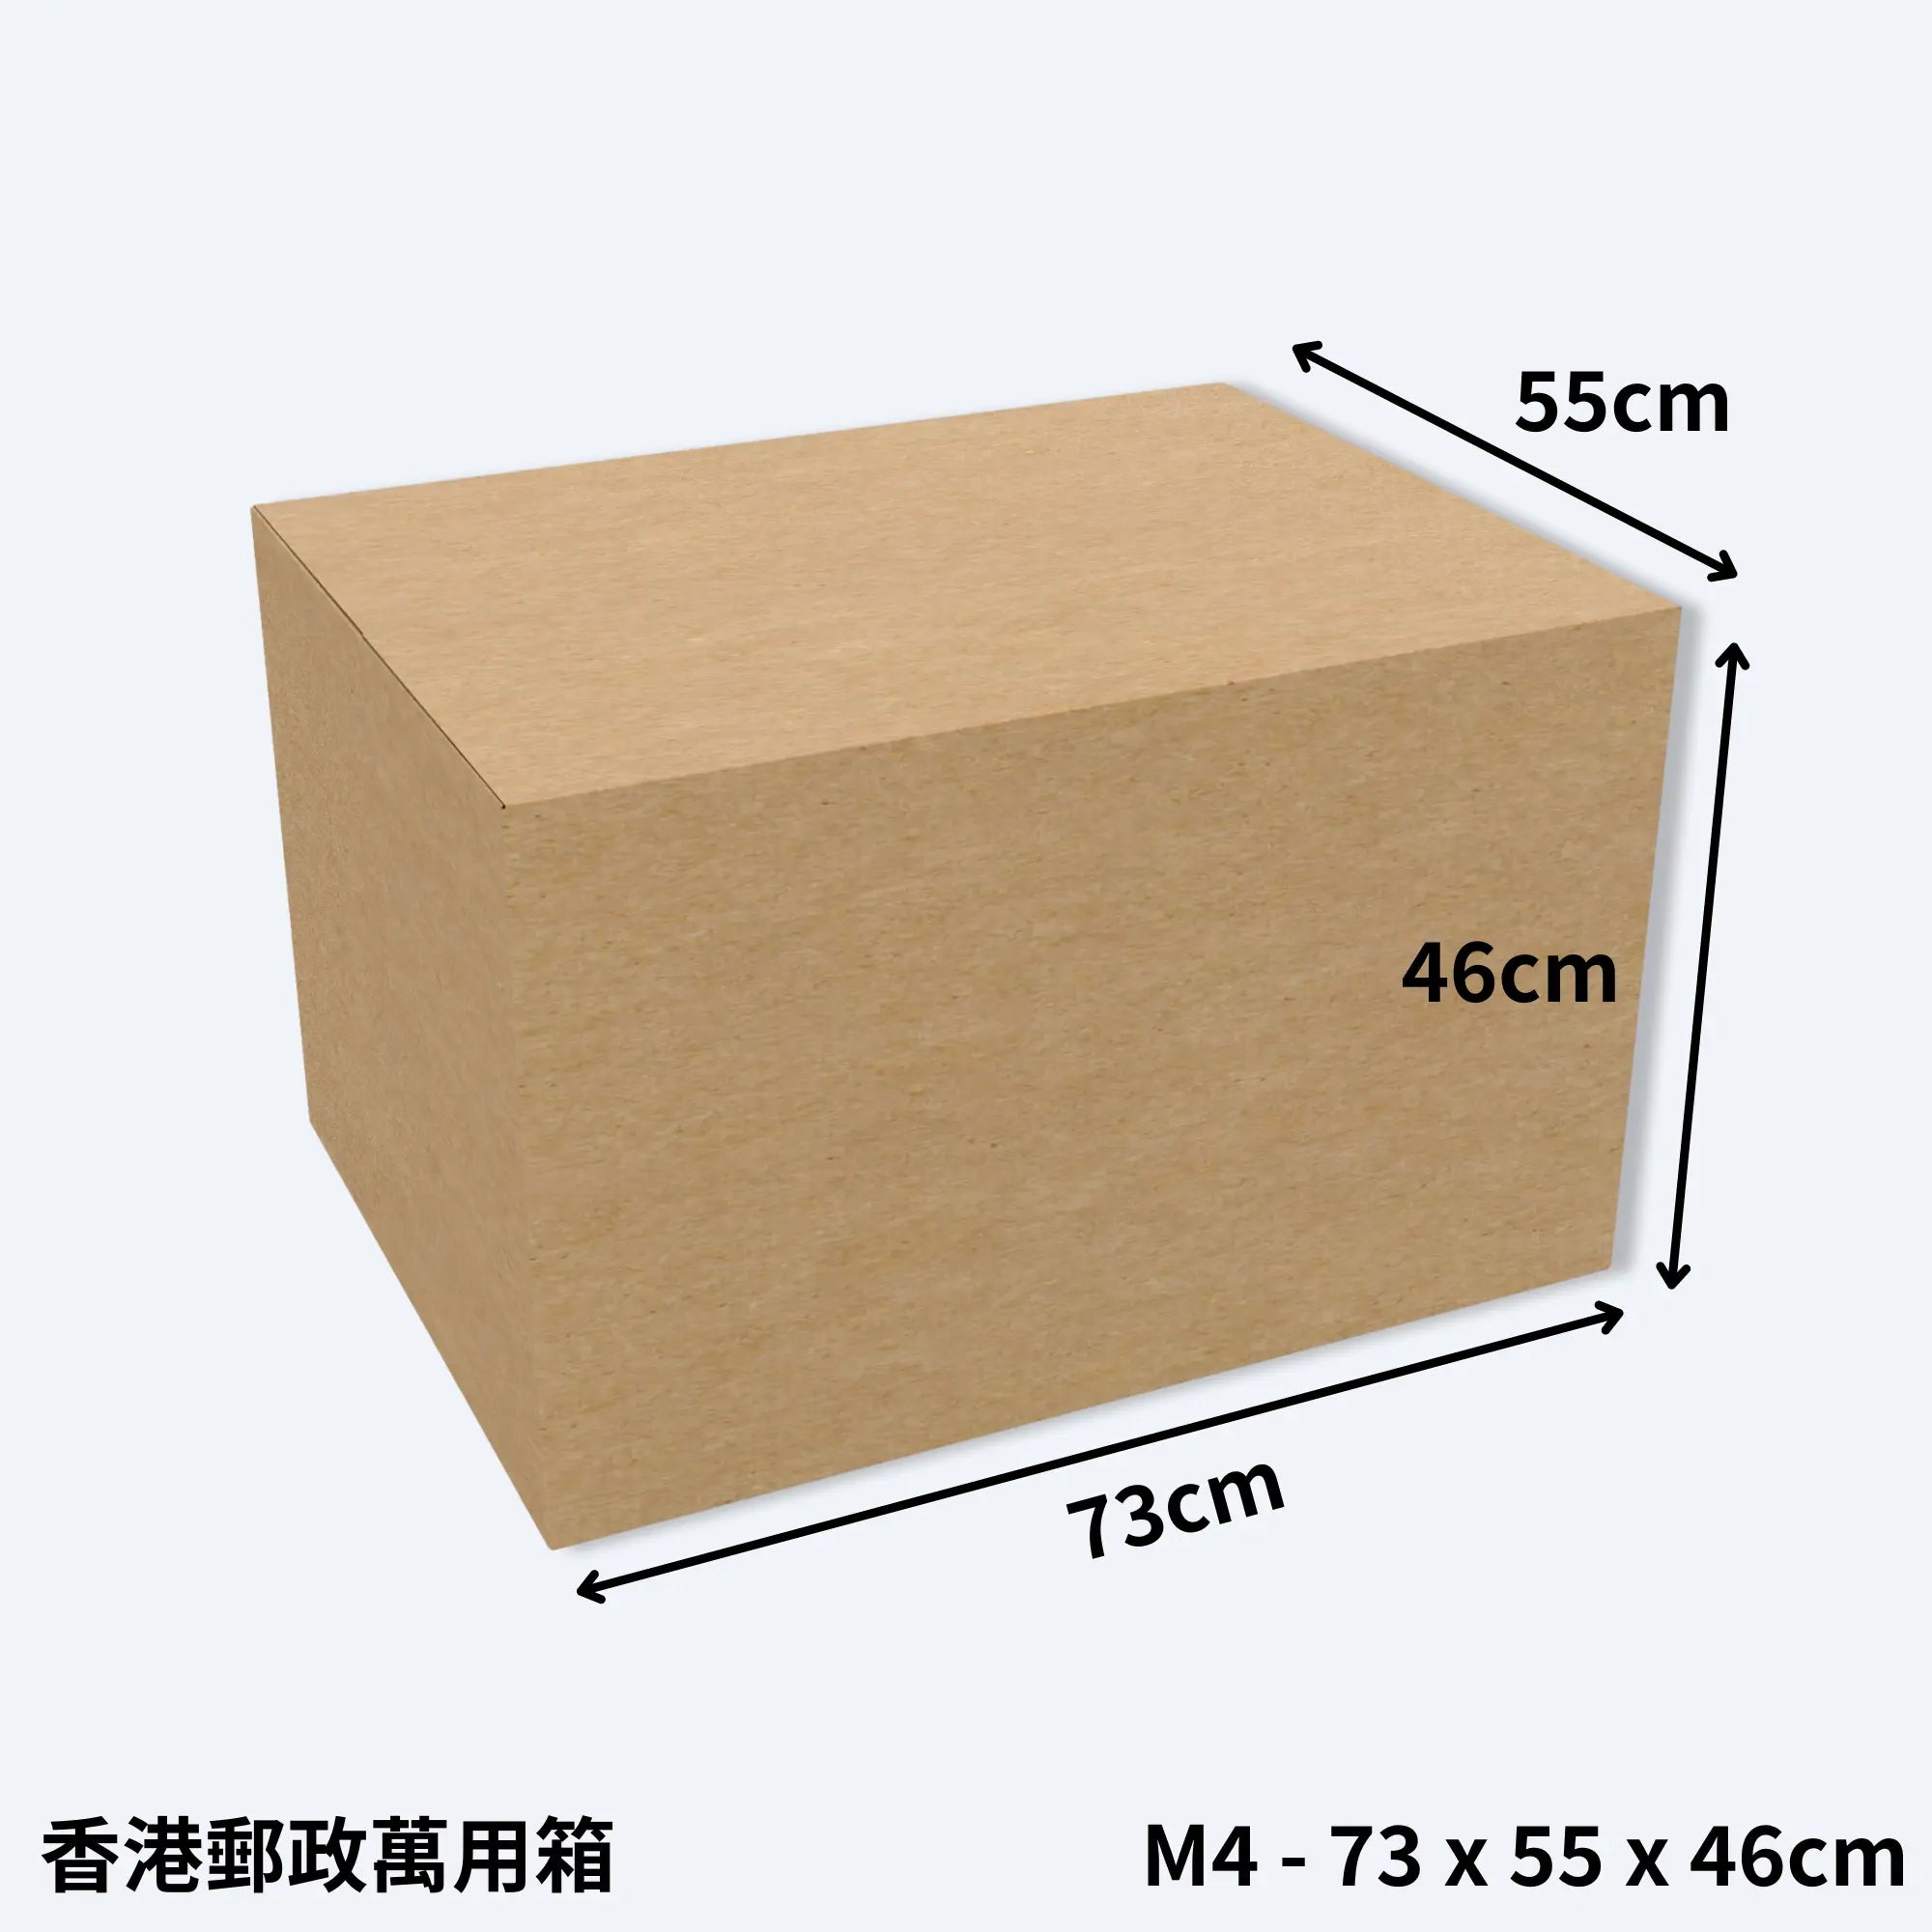 一個大型的香港郵政專用紙箱，型號M4萬用箱，尺寸為73cm x 55cm x 46cm，展示了紙箱的長寬高比例。